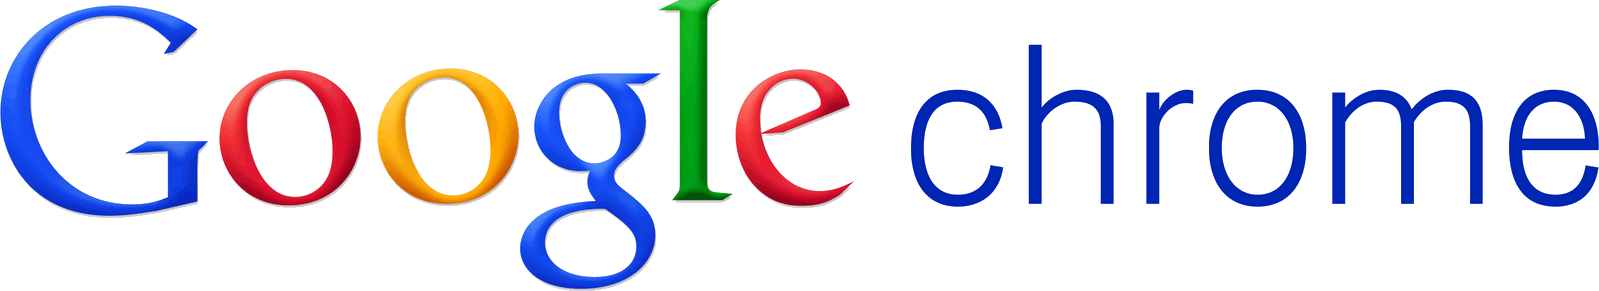 Original Google Logo - Google logo and Chrome wordmark.png